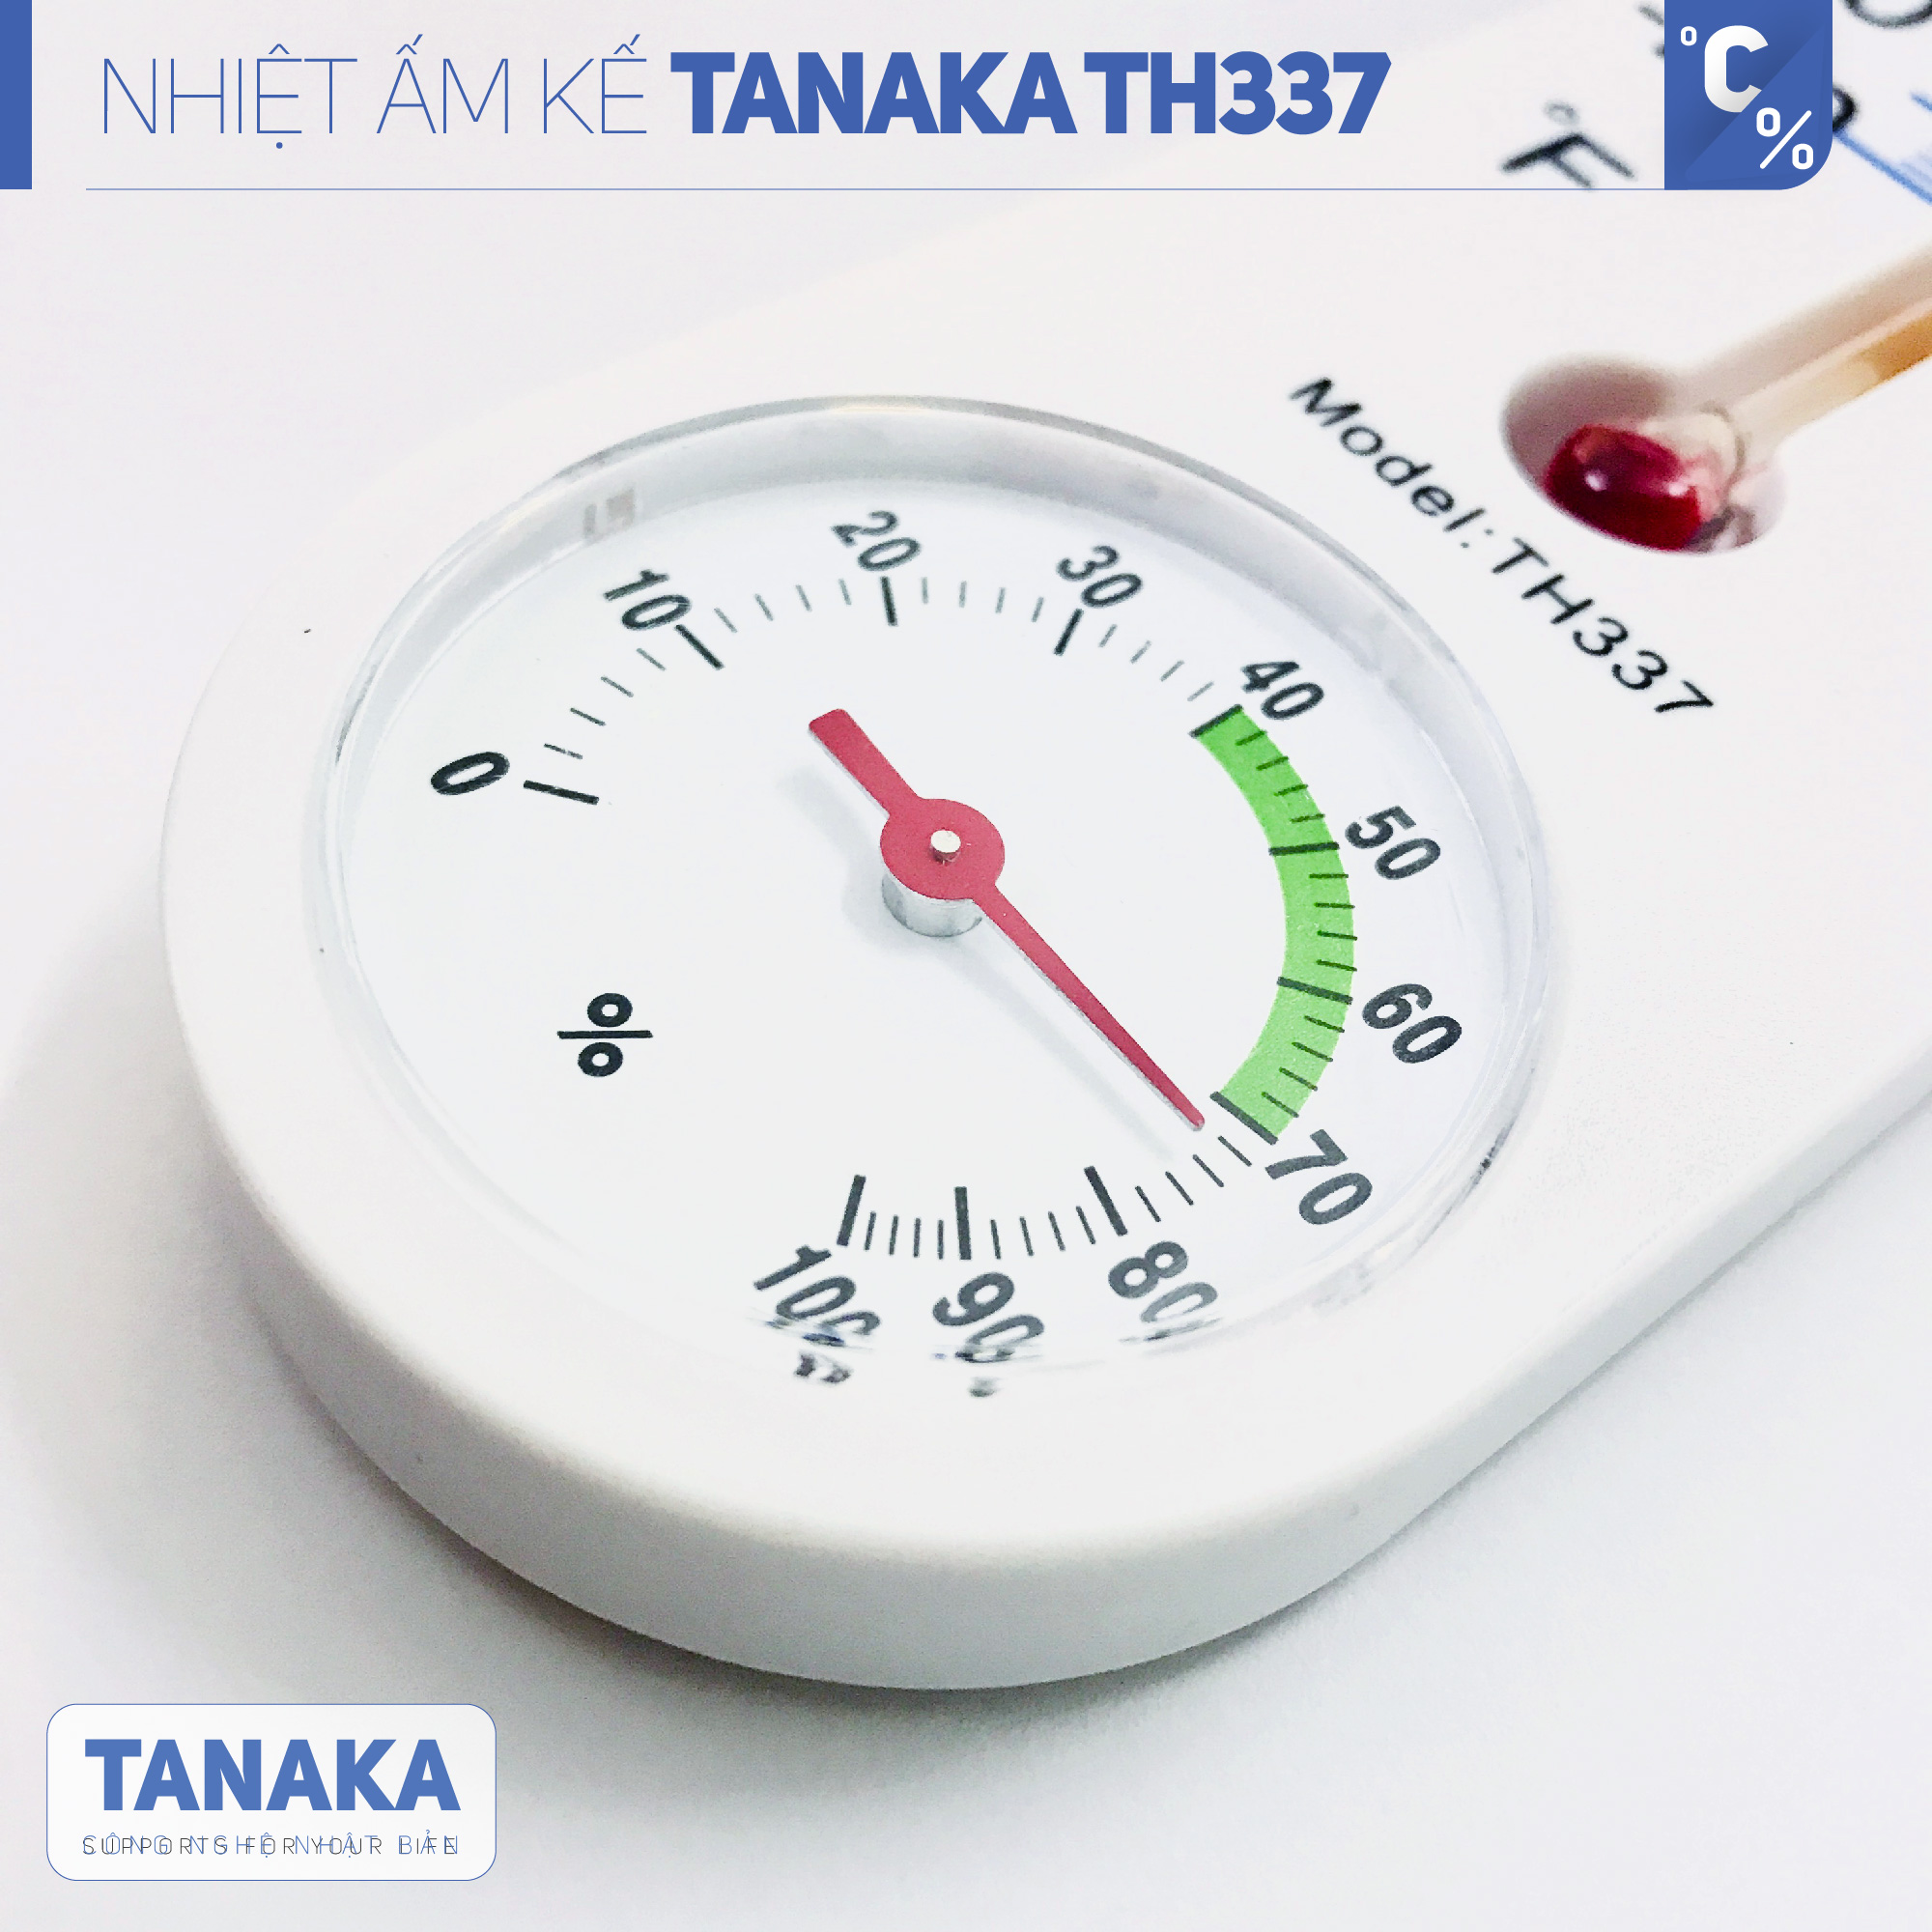 Nhiệt ẩm kế cơ học TANAKA TH3371,đồng hồ ẩm kế đo độ ẩm nhiệt độ phòng,nhiệt ẩm kế chính xác,nhiệt ẩm kế phòng,nhiệt ẩm kế dùng cho trẻ sơ sinh,nhiệt ẩm kế treo tườn